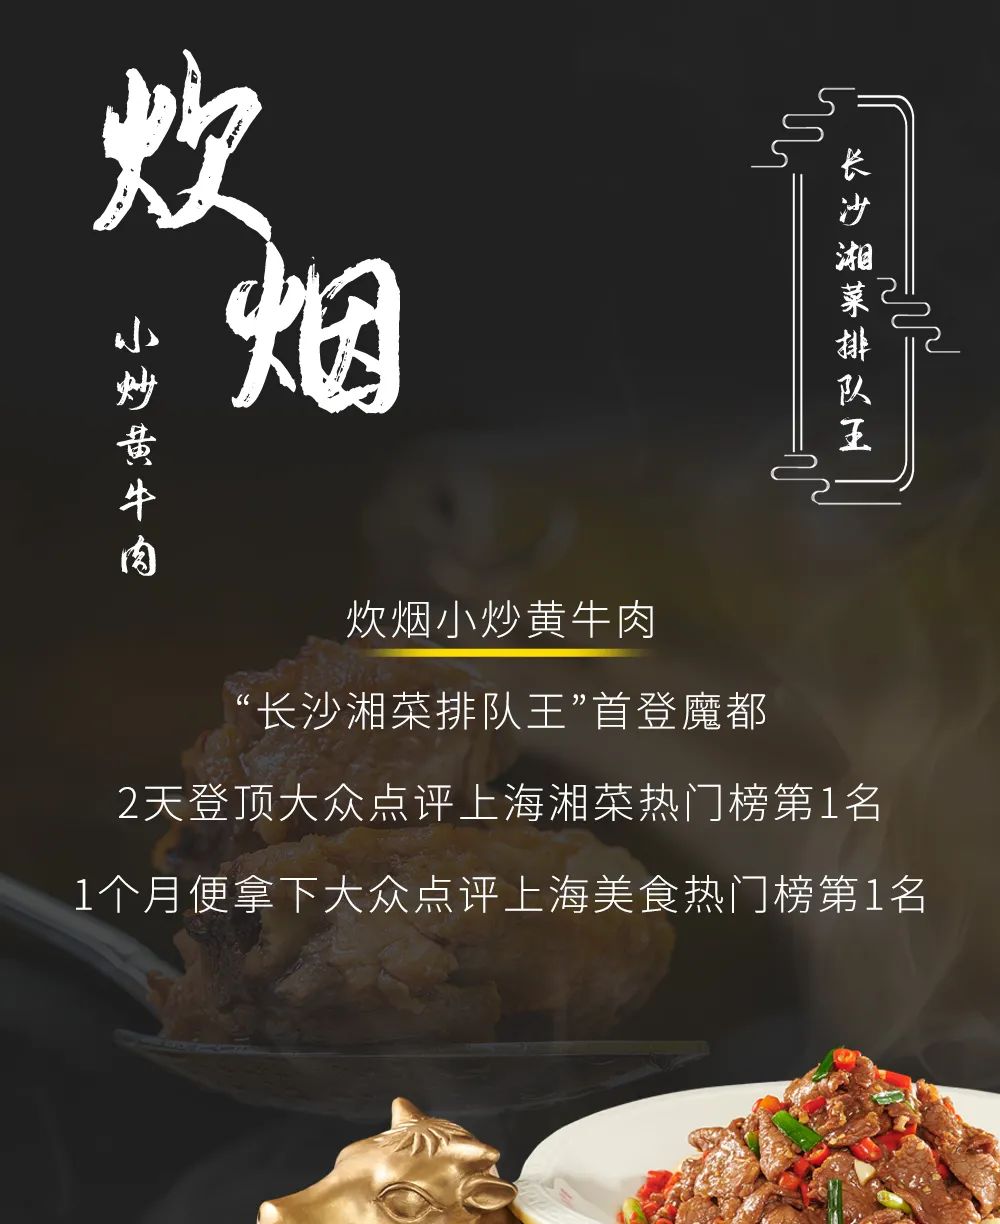 美食热门榜第1 炊烟小炒黄牛肉 被授牌 上海湘菜排队王 上海美食攻略 微信公众号文章 微小领